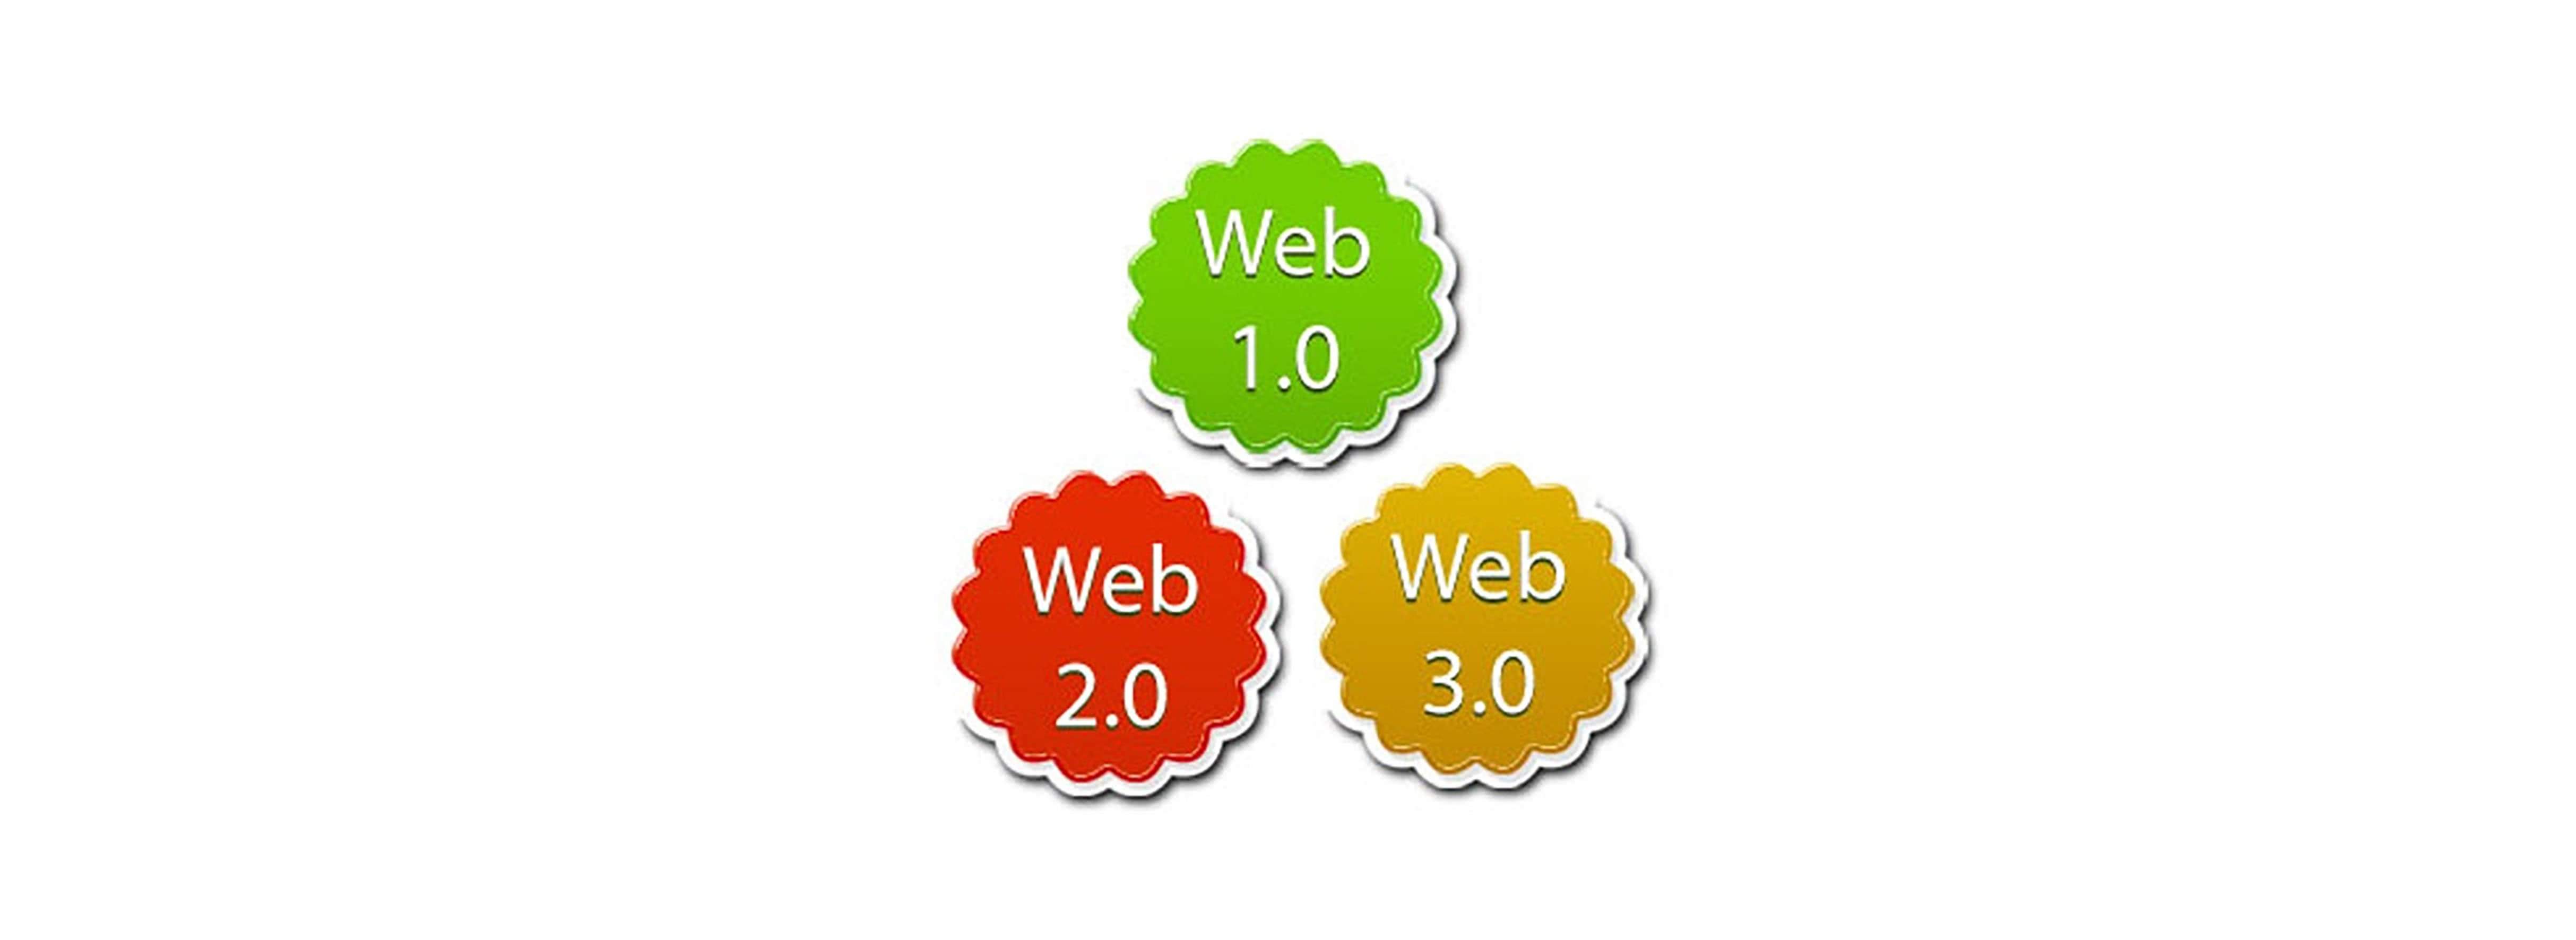 1 июля 00 00. Технологии web 2.0. Технология web 3.0. Web 2 web 3. Web 1.0 web 2.0 web 3.0.